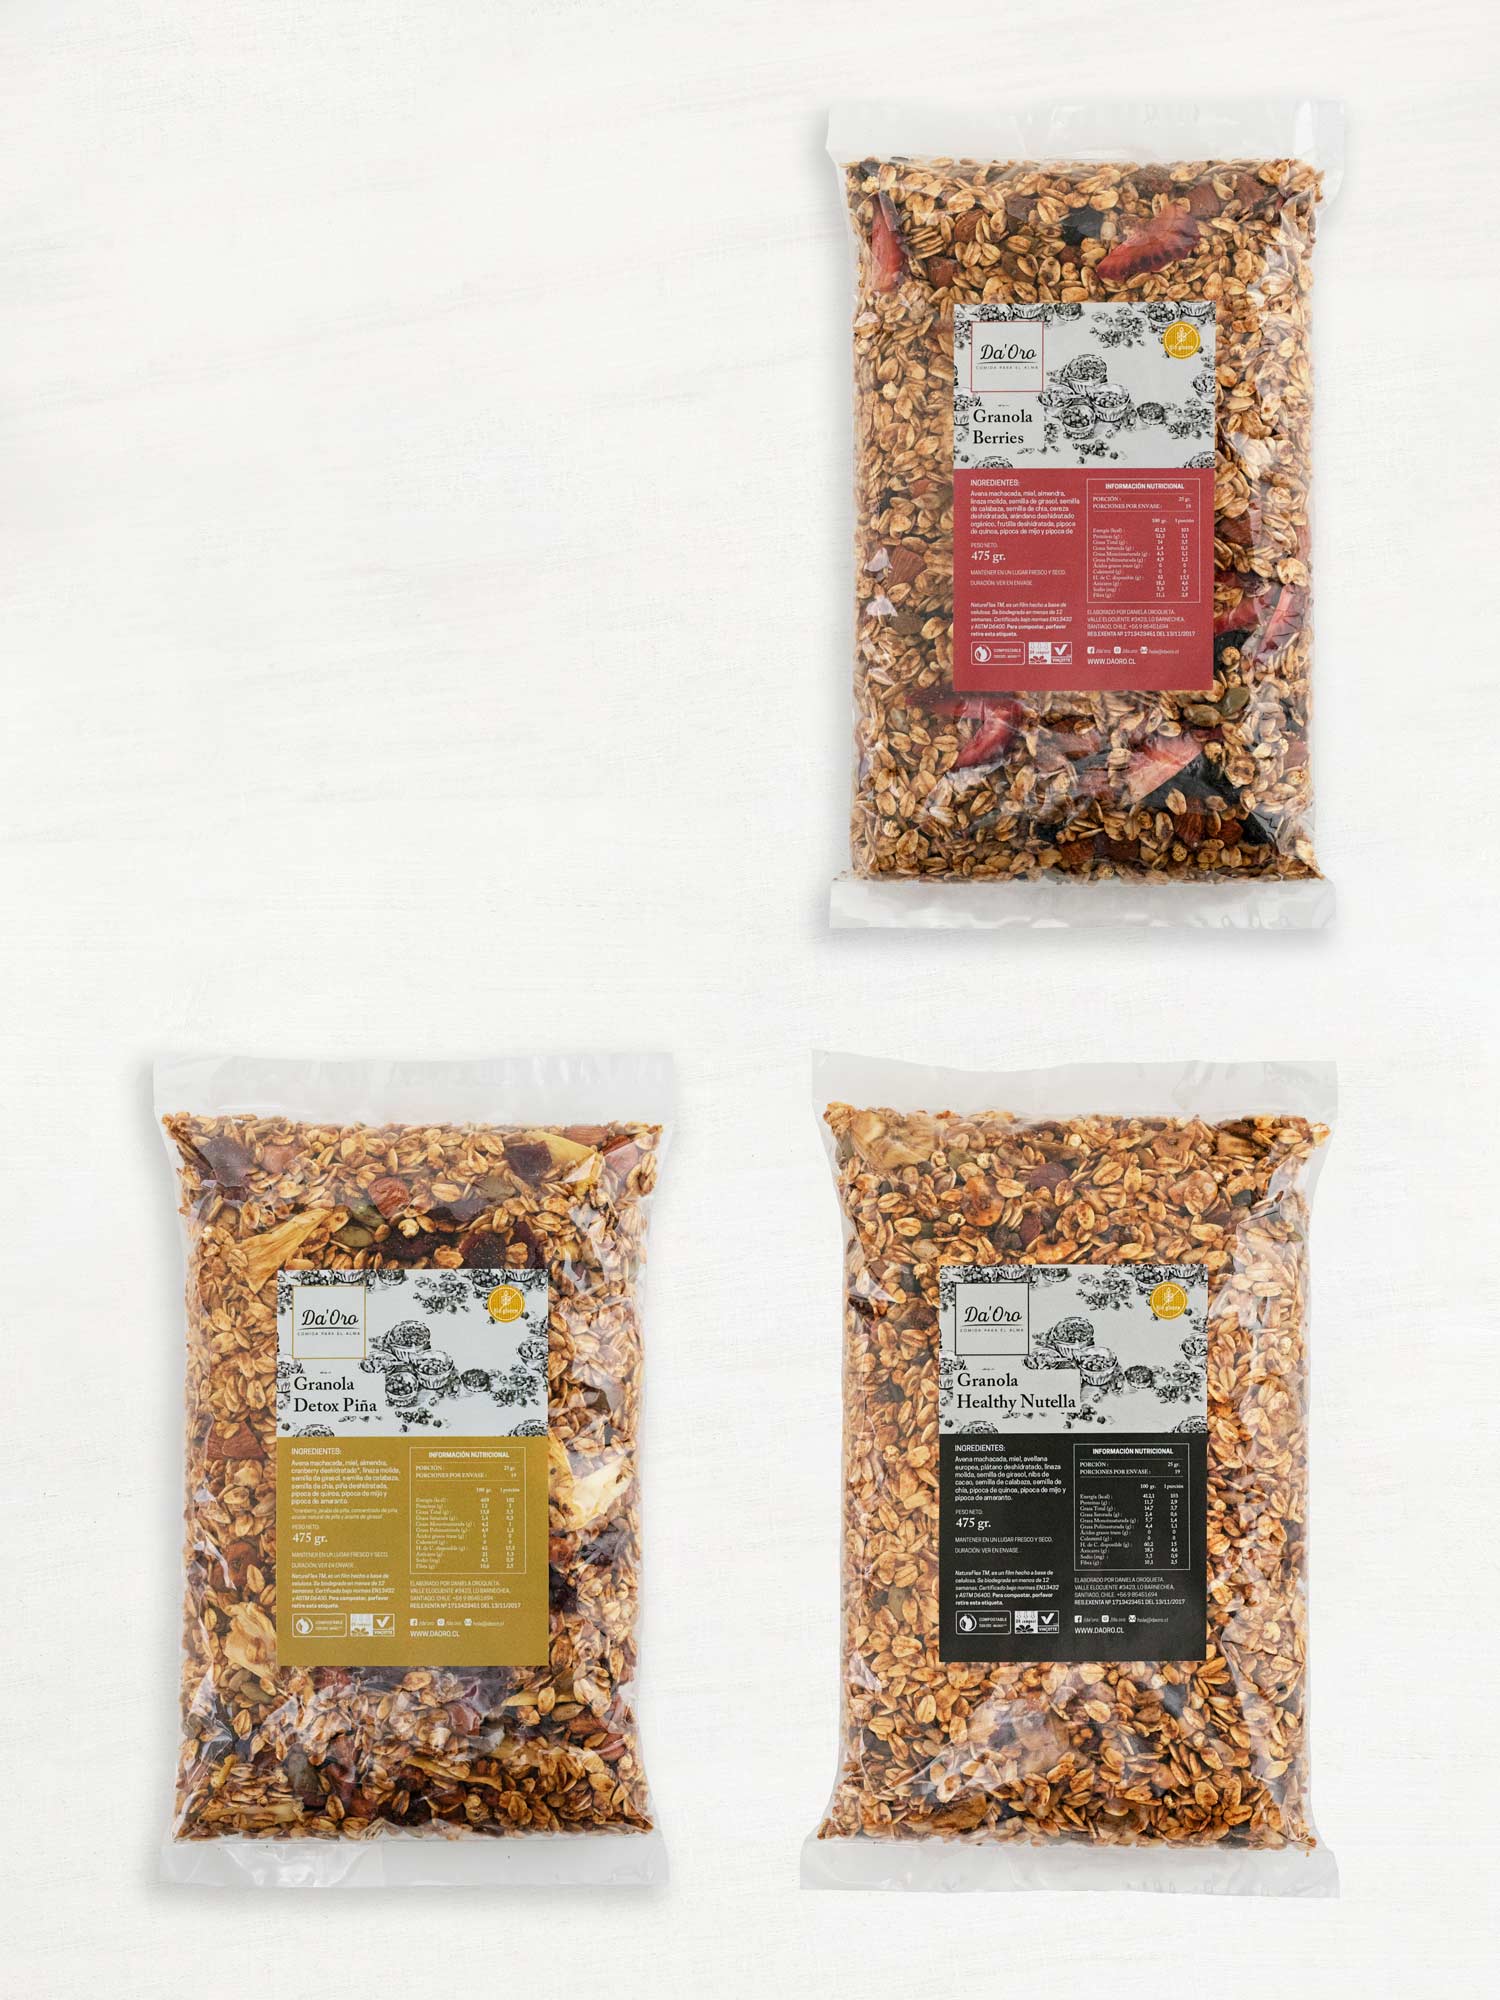 Tres bolsas transparentes de 475 gramos con granola sin gluten de distinto sabor